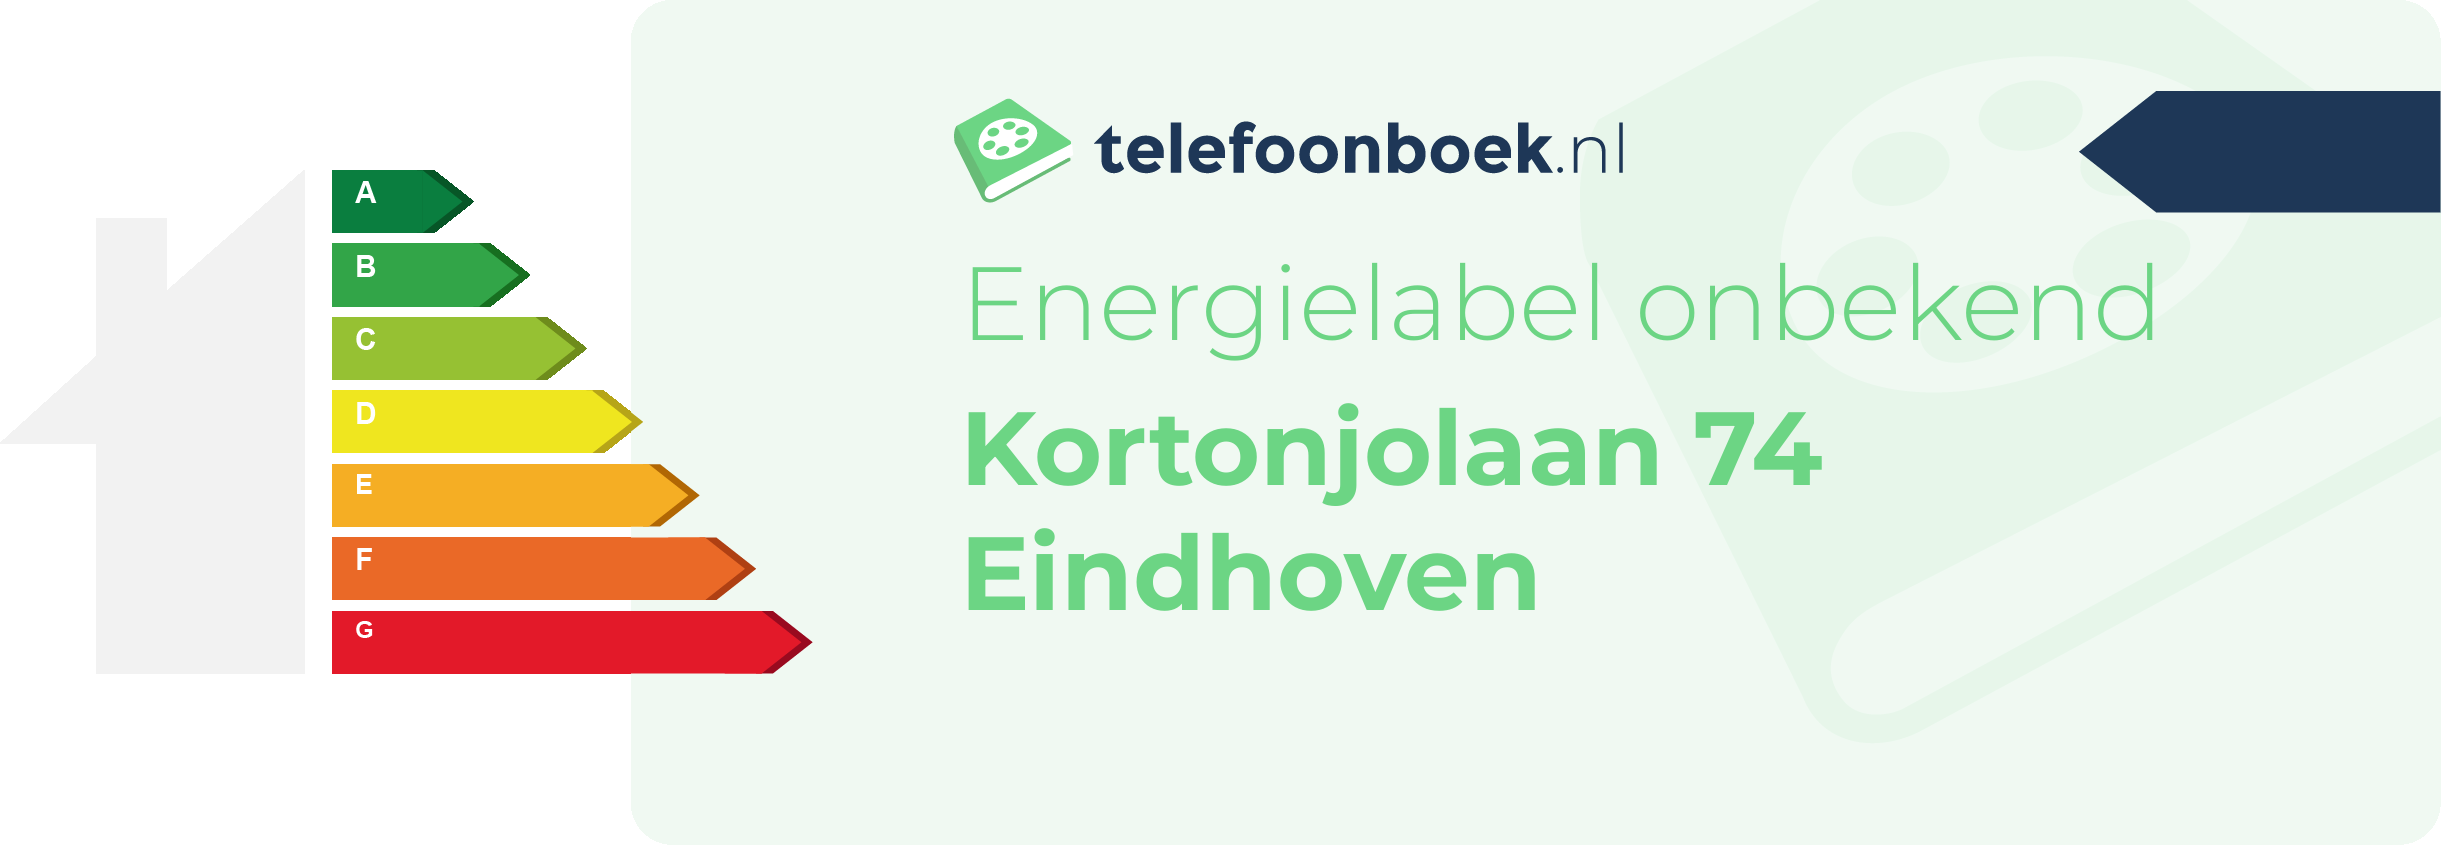 Energielabel Kortonjolaan 74 Eindhoven